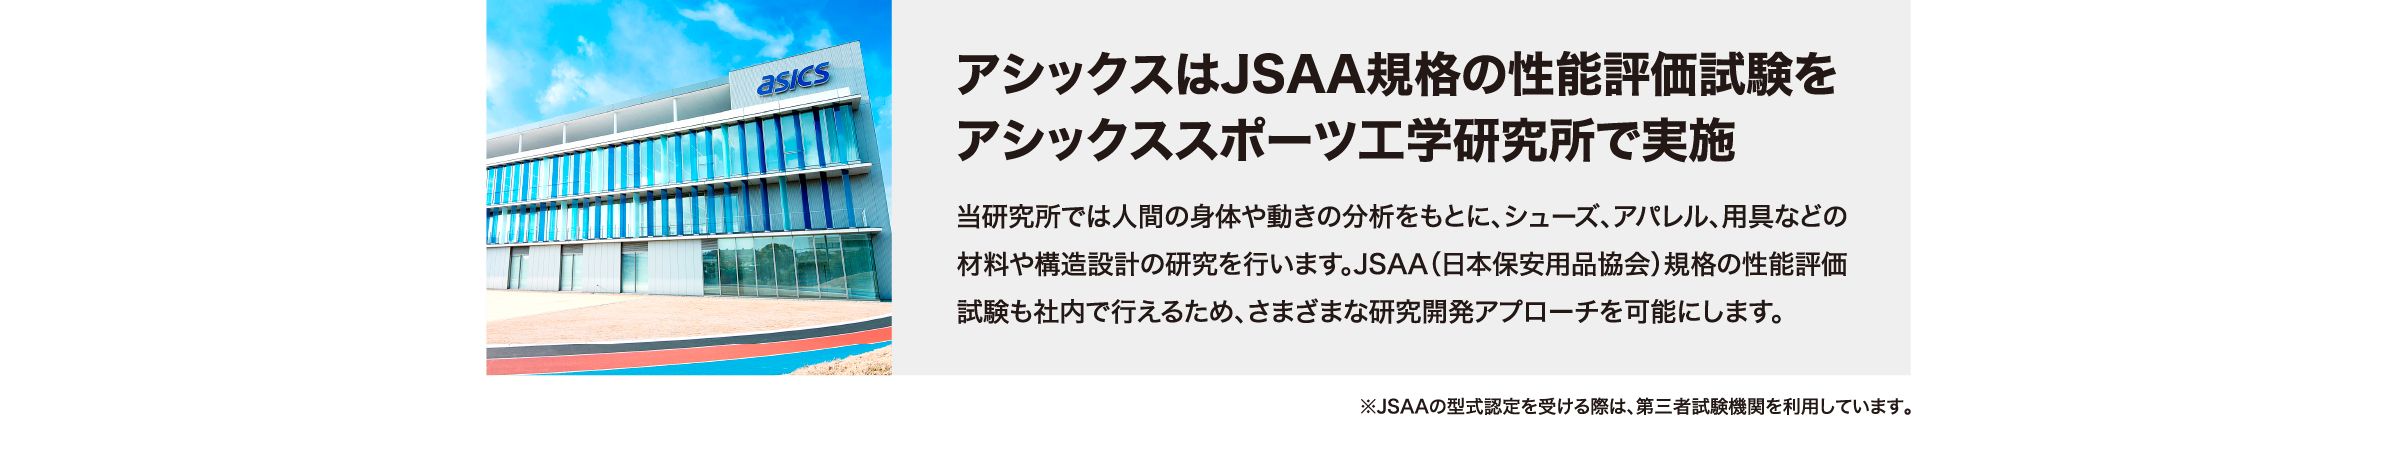 アシックスはJSAA規格の性能評価試験を アシックススポーツ工学研究所で実施